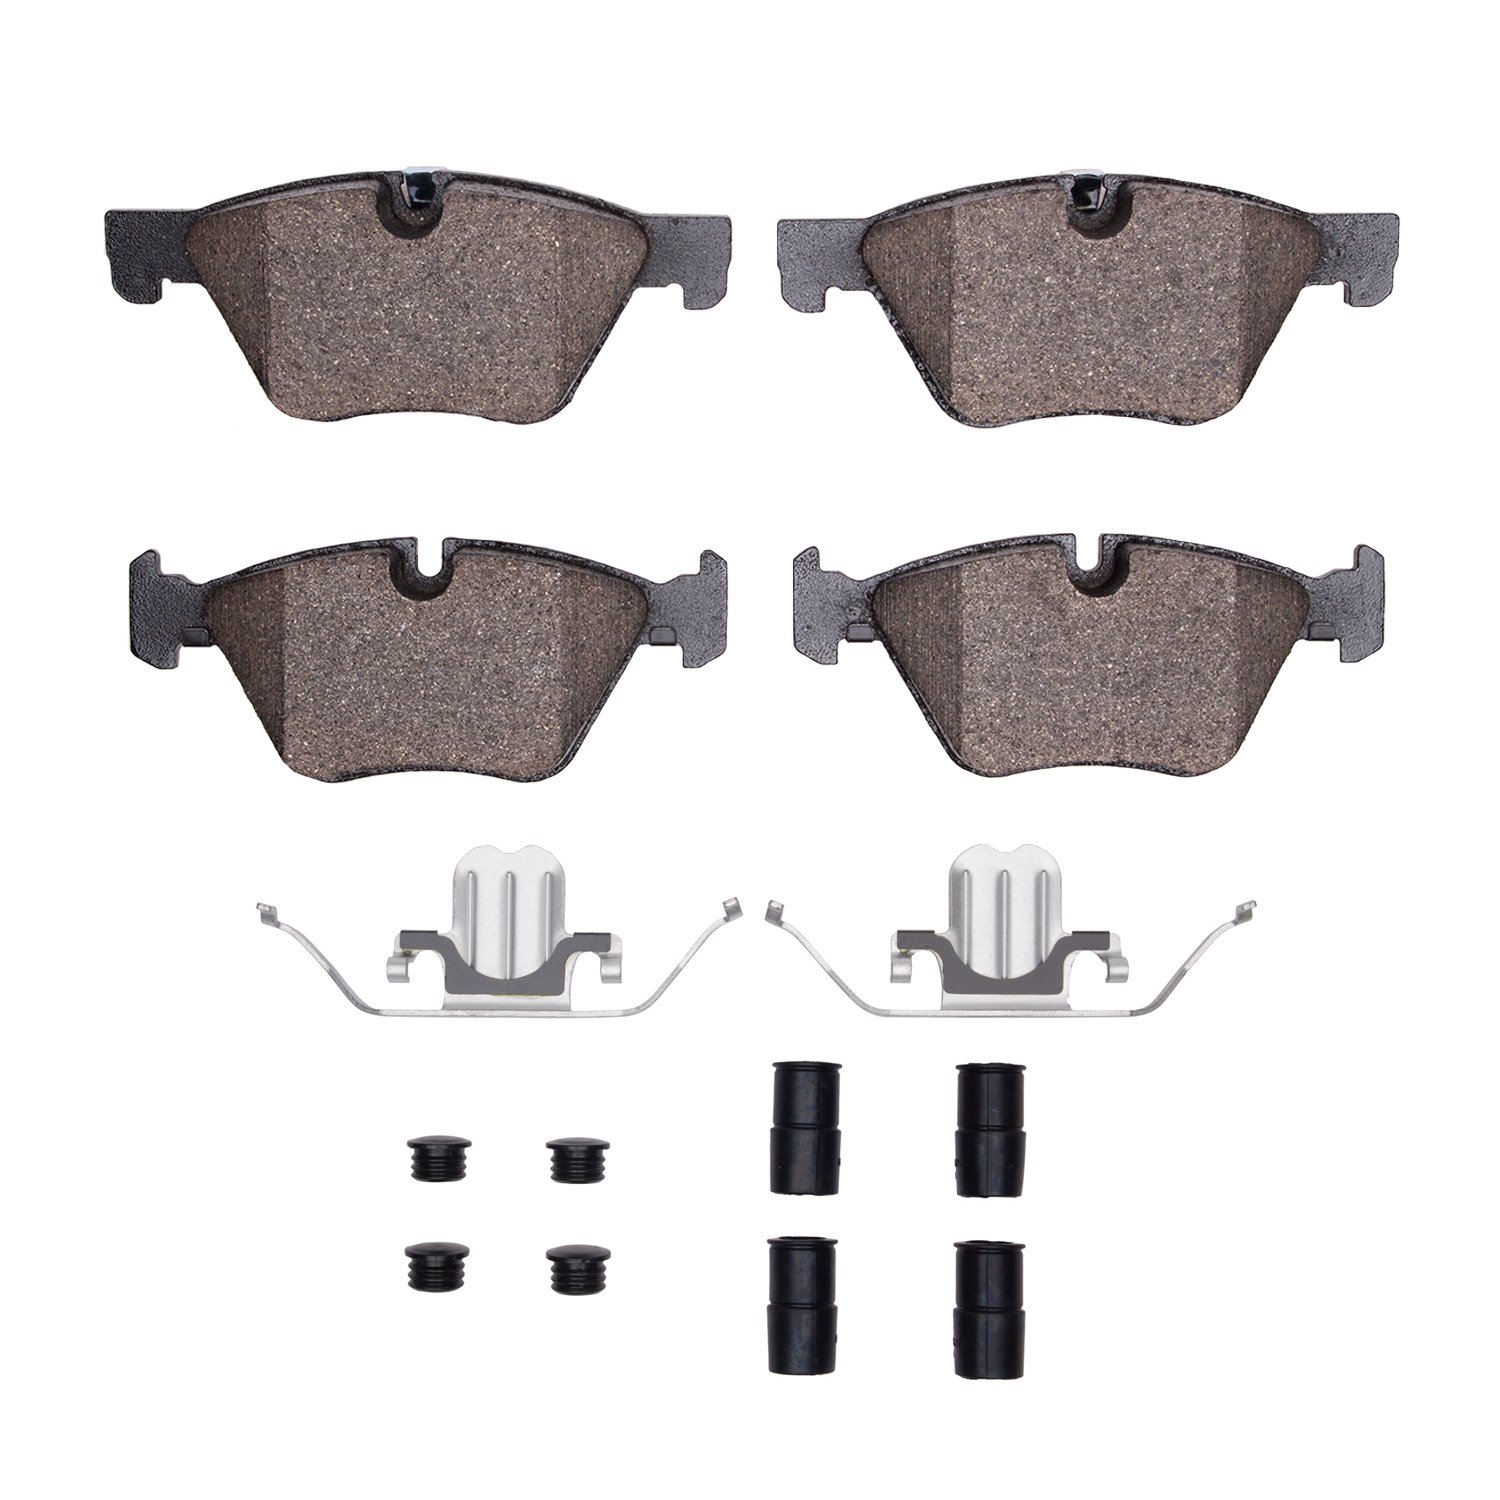 1600-1504-01 5000 Euro Ceramic Brake Pads & Hardware Kit, 2011-2016 BMW, Position: Front